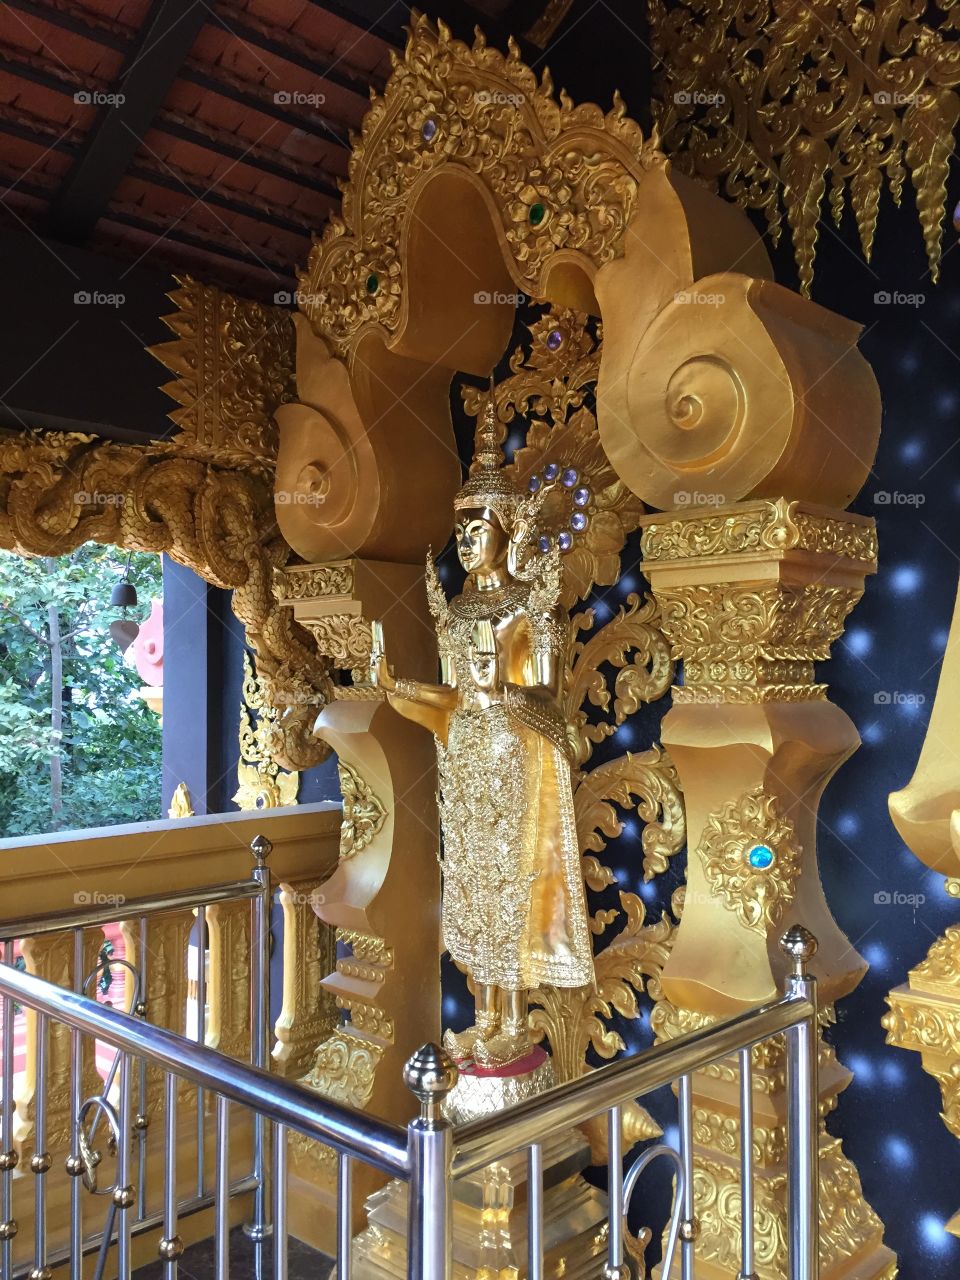 Wat Phra That Doi Phrachan
Lampang